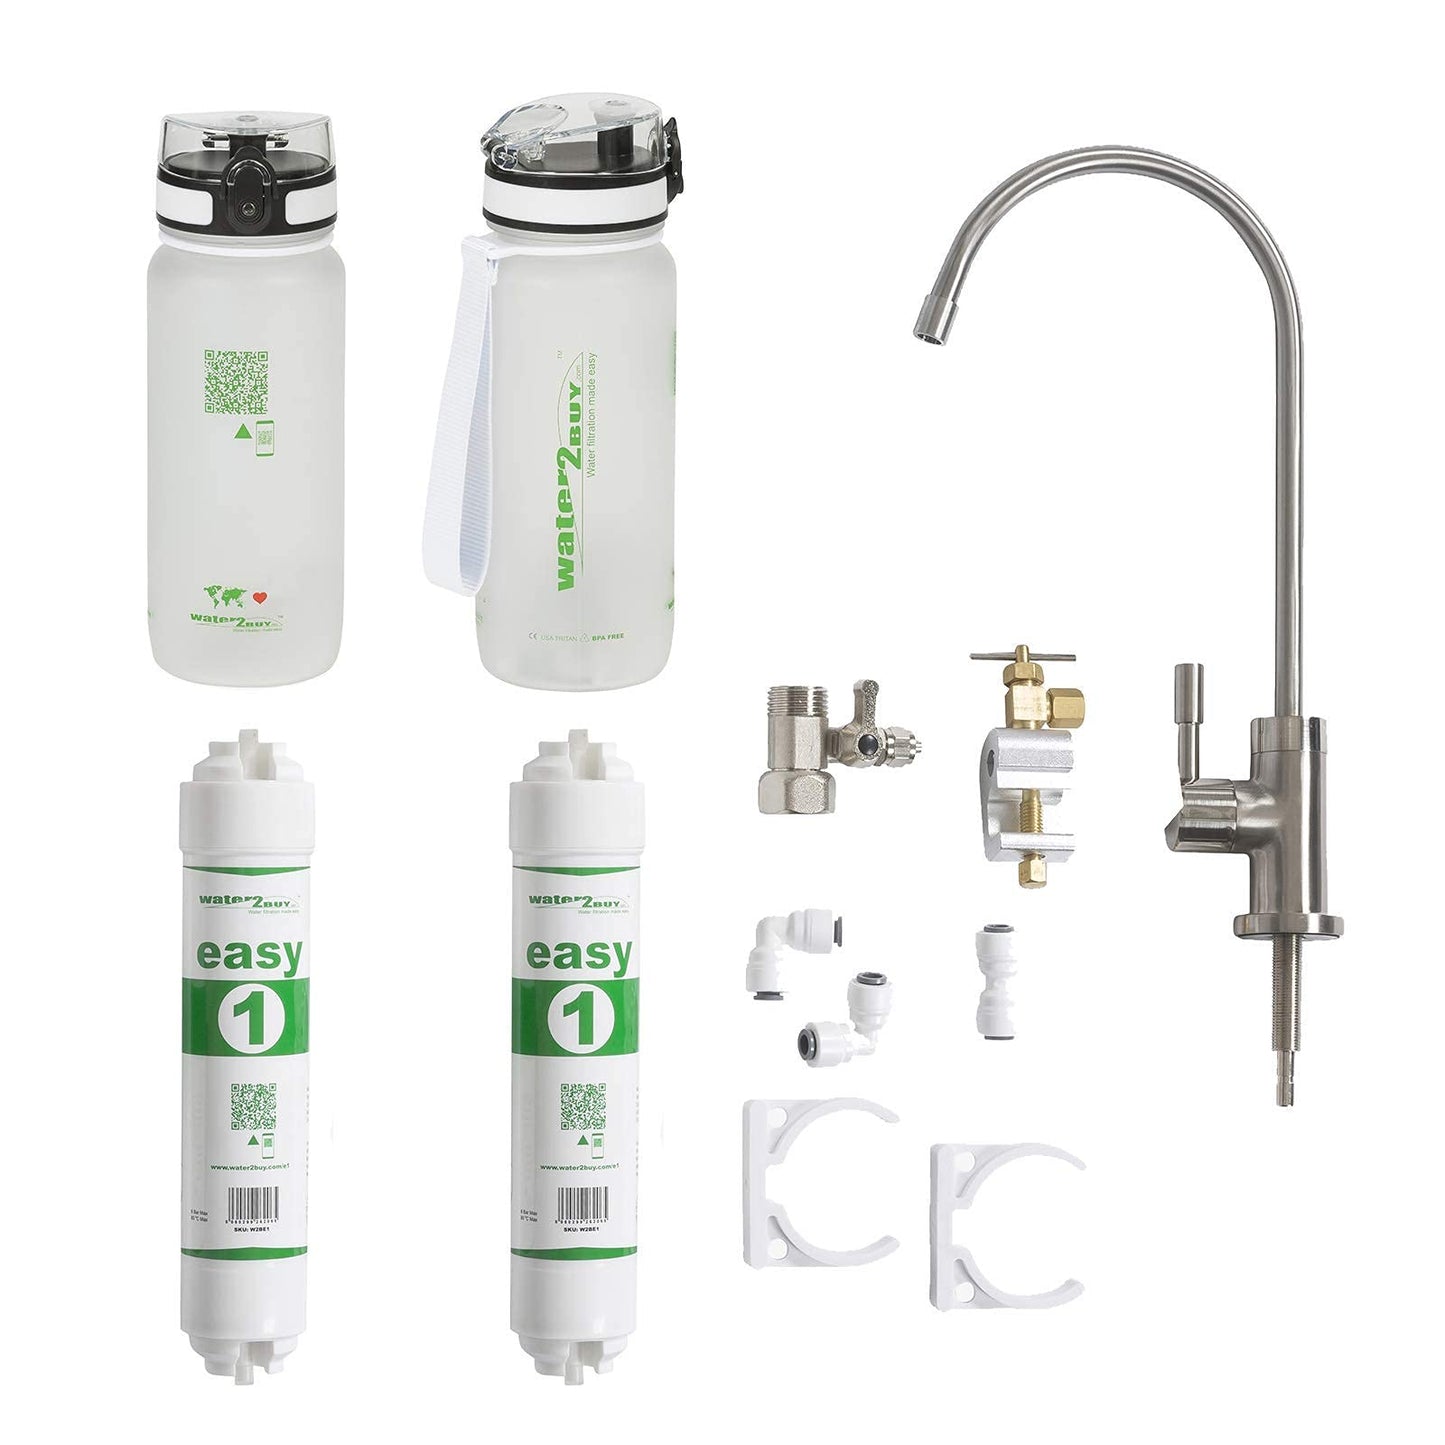 Sistema de filtro de agua Easy1 con 2 botellas de agua, proporciona 6000 litros de agua limpia durante 6 a 12 meses, certificación NSF/FDS/ISO 9001 y 14001, grifo de filtro de agua debajo del fregadero Modelo de kit de bricolaje fácil